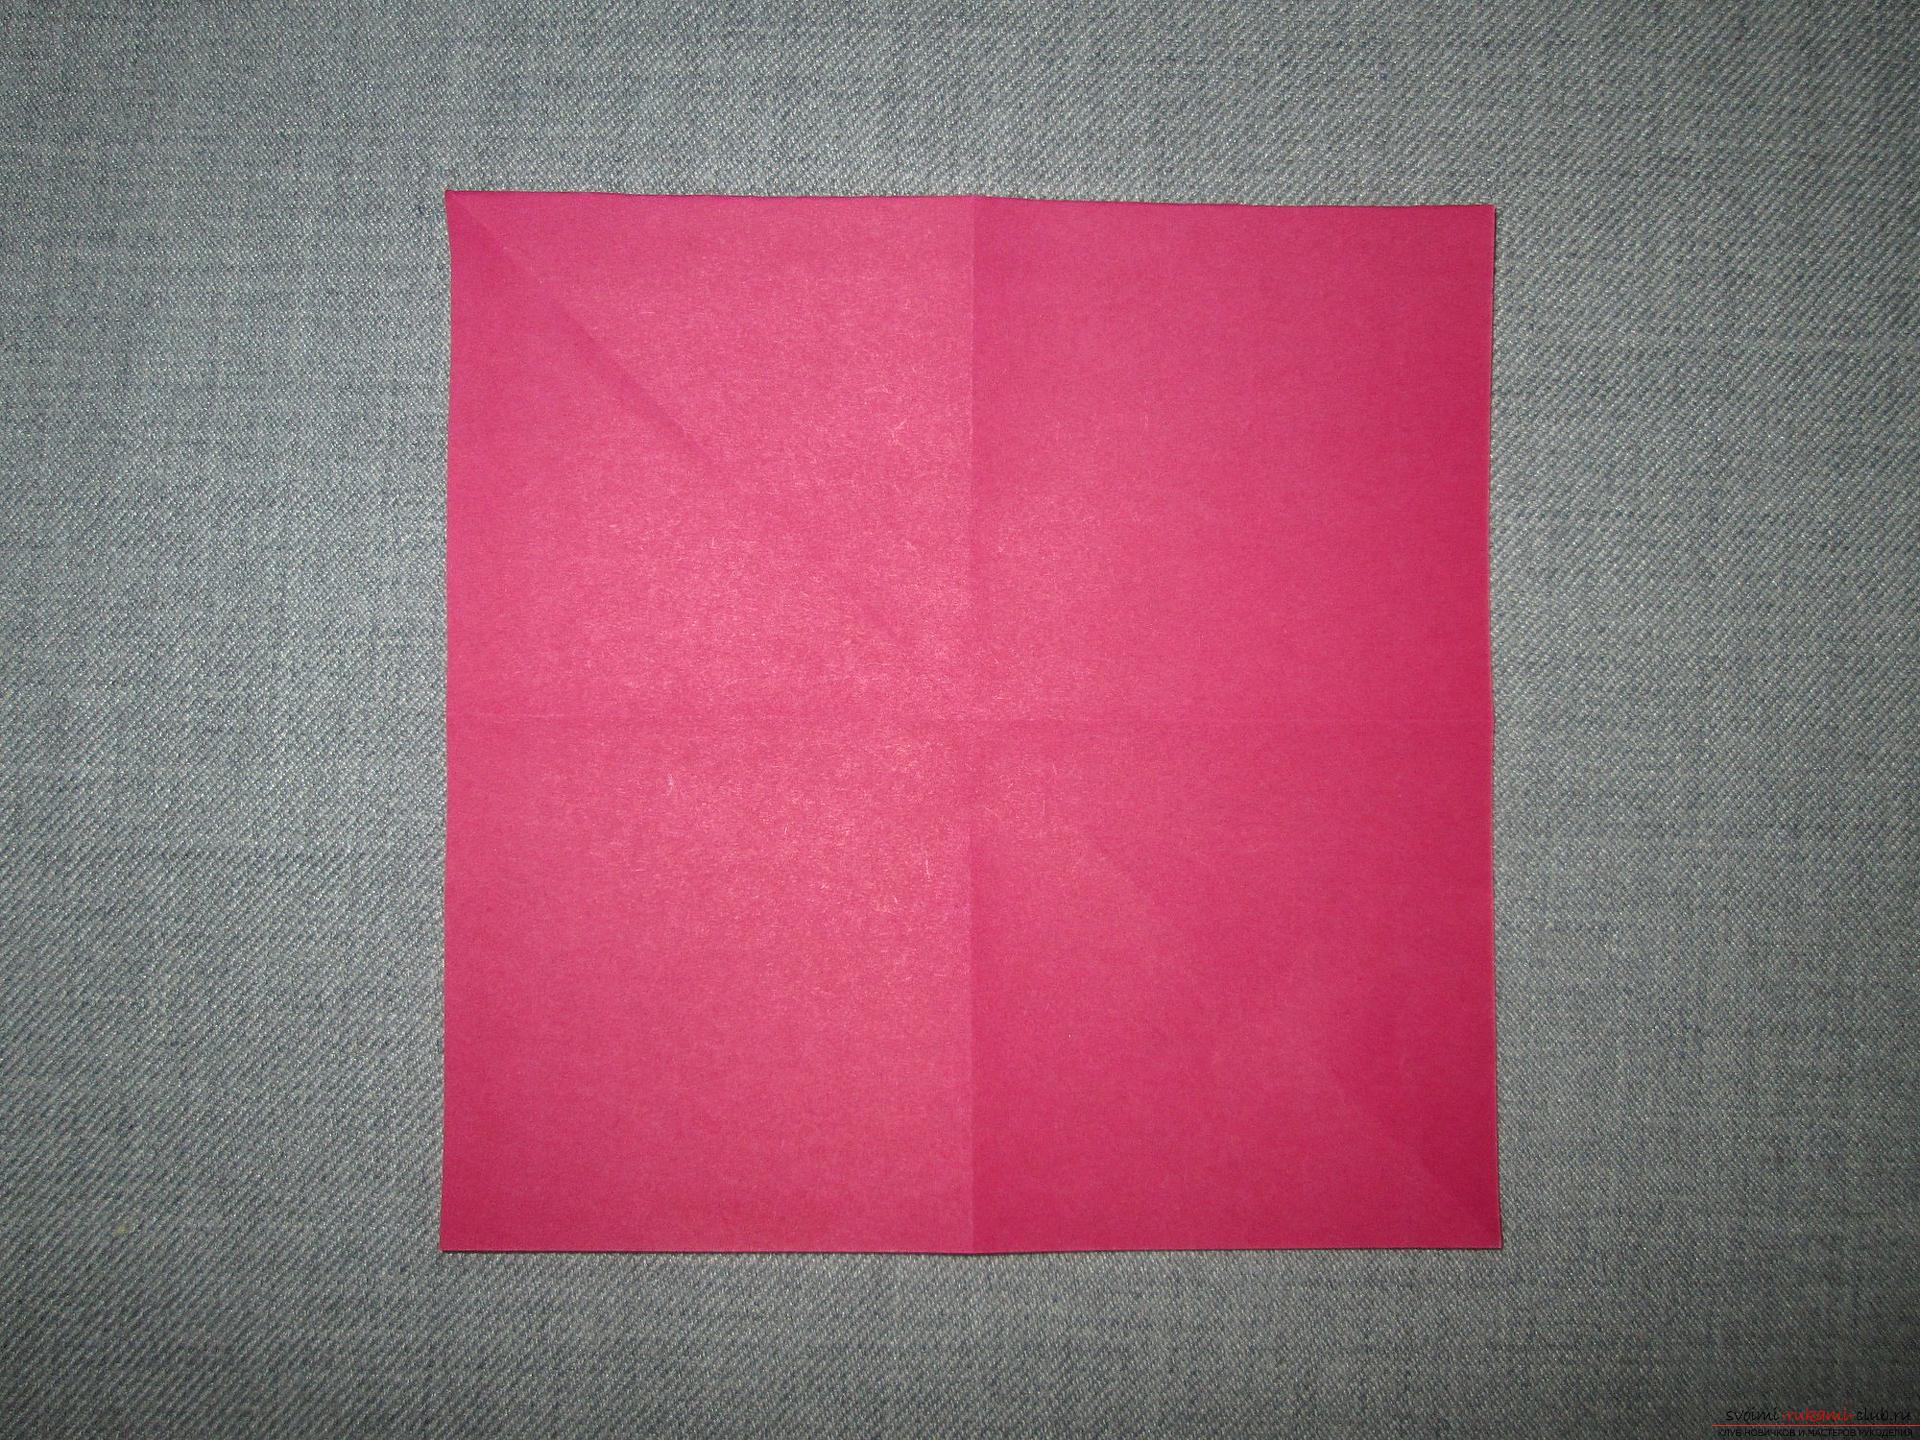 Этот подробный мастер-класс оригами для детей 7 лет научит как сделать платье из бумаги своими руками.. Фото №2